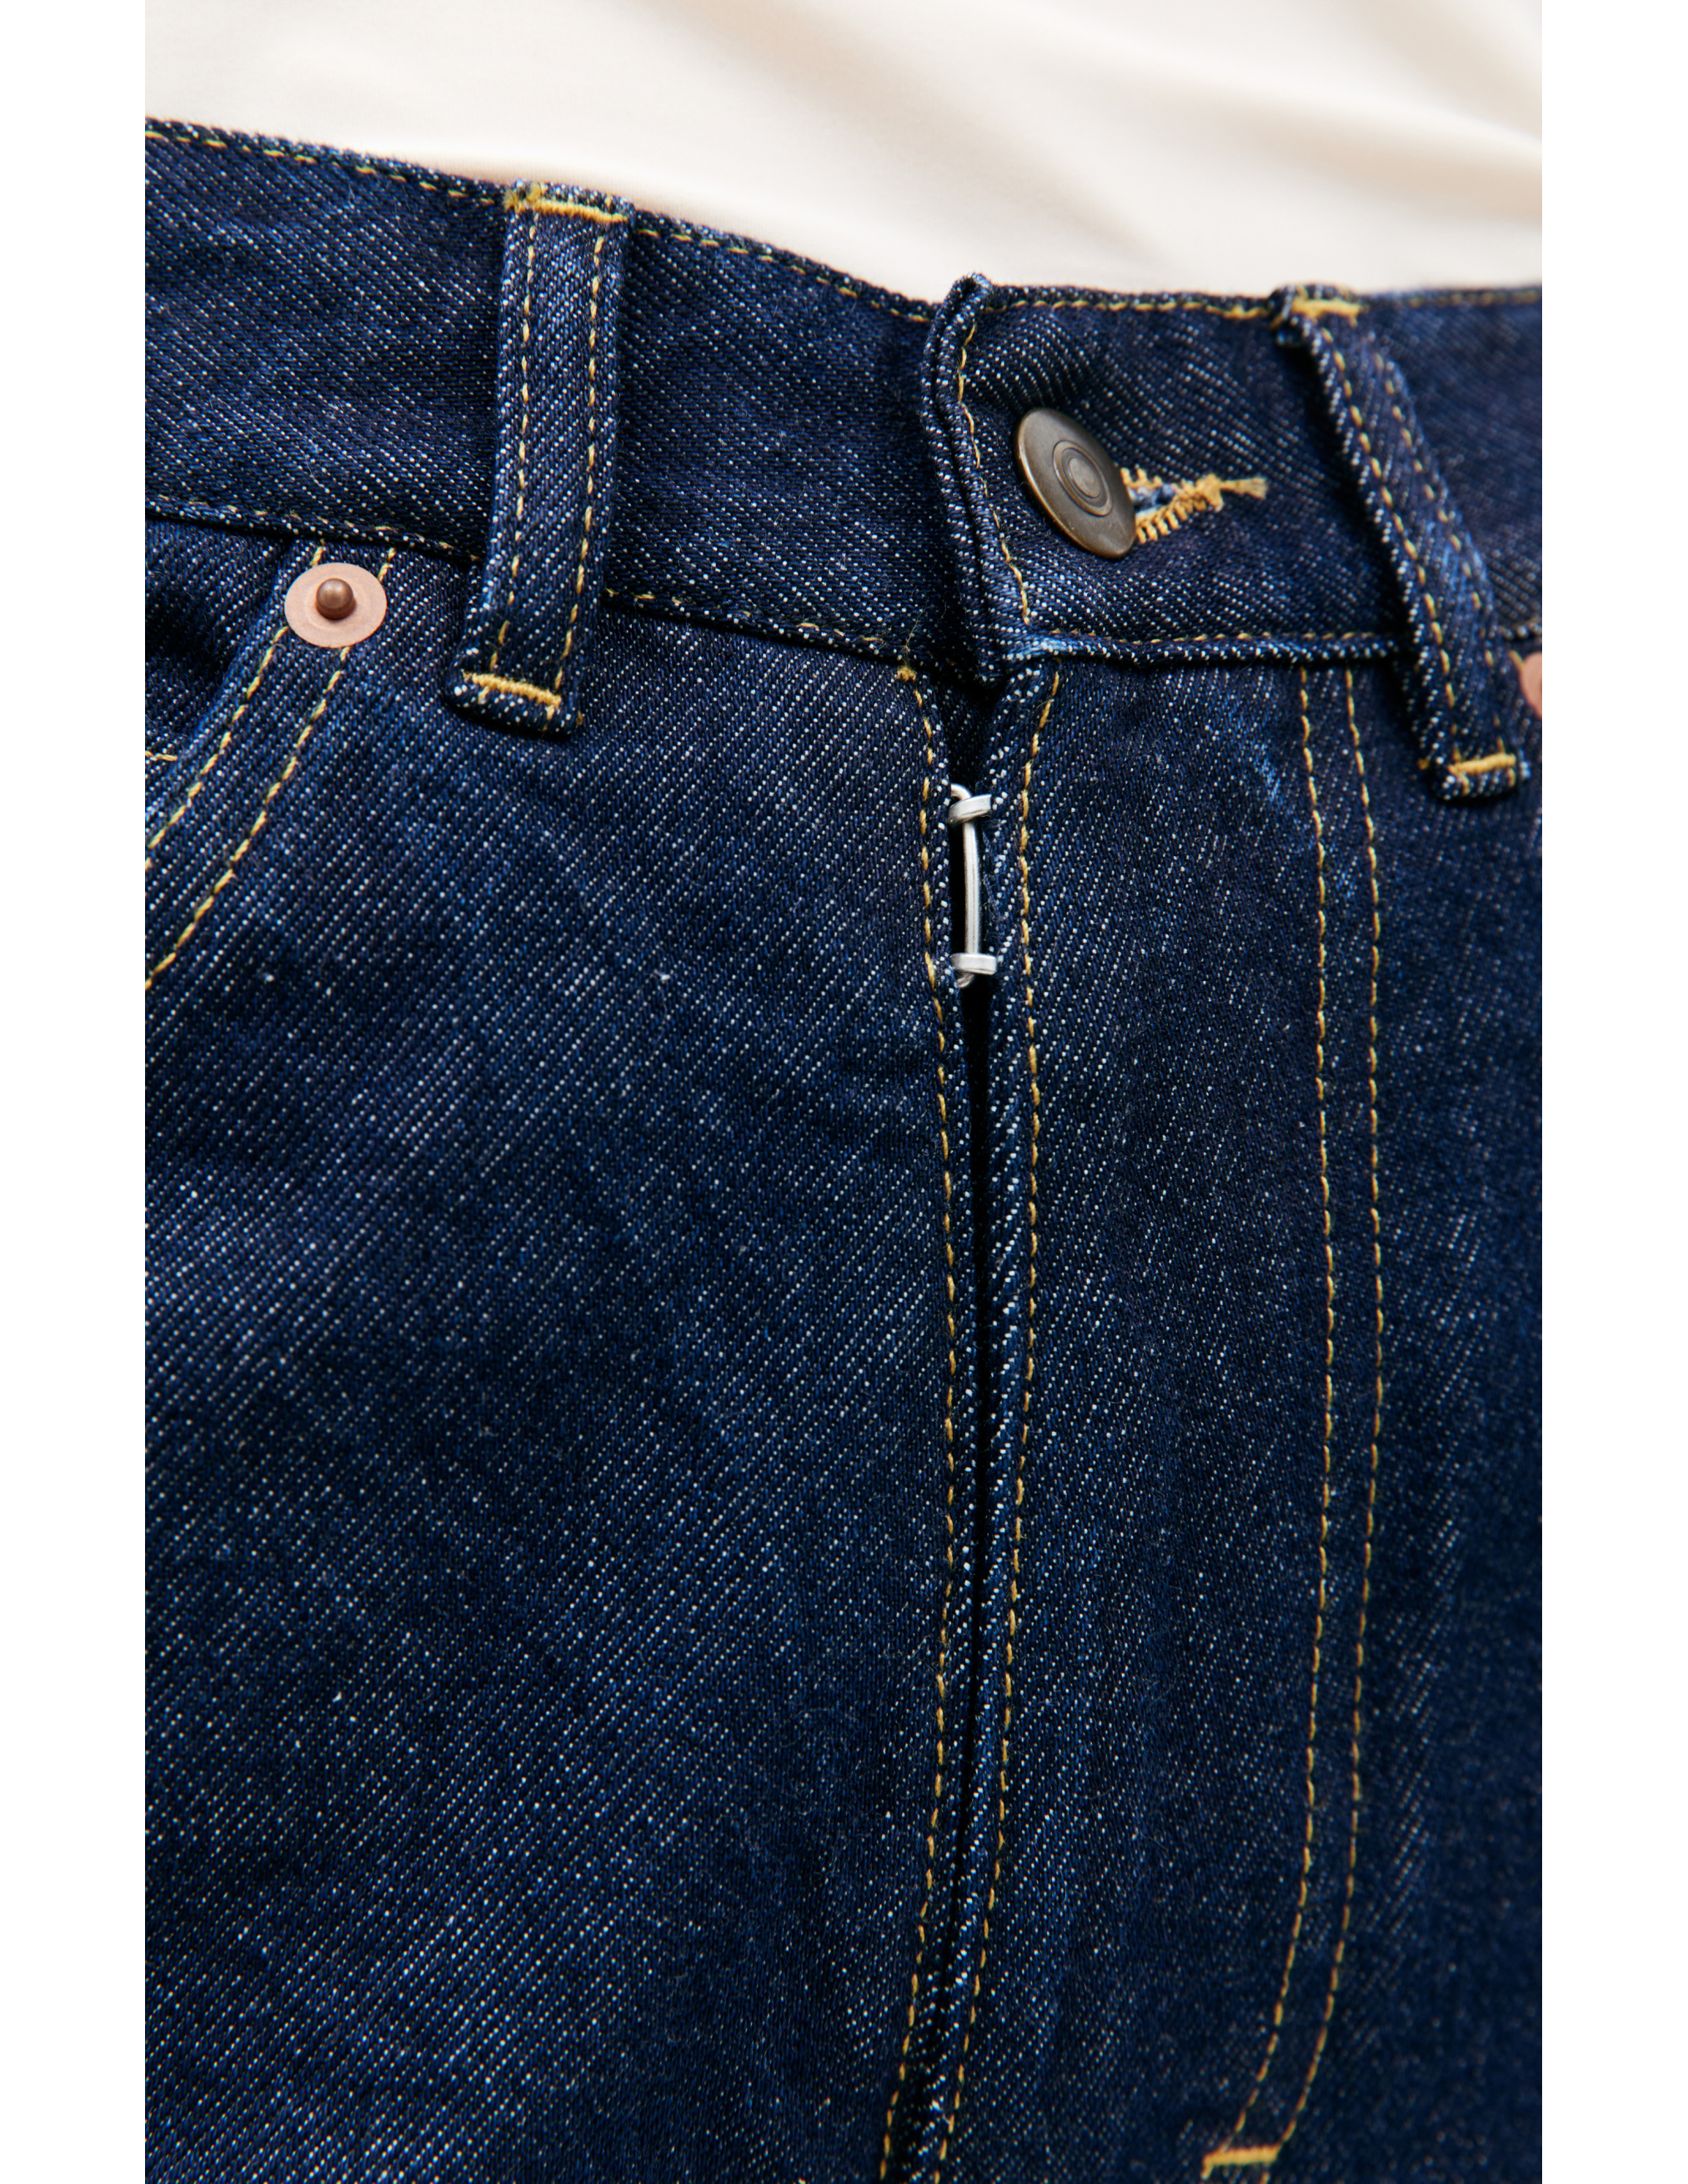 Прямые джинсы с контрастной строчкой Maison Margiela S67LA0026/S30854/470, размер 30;32;34 S67LA0026/S30854/470 - фото 5